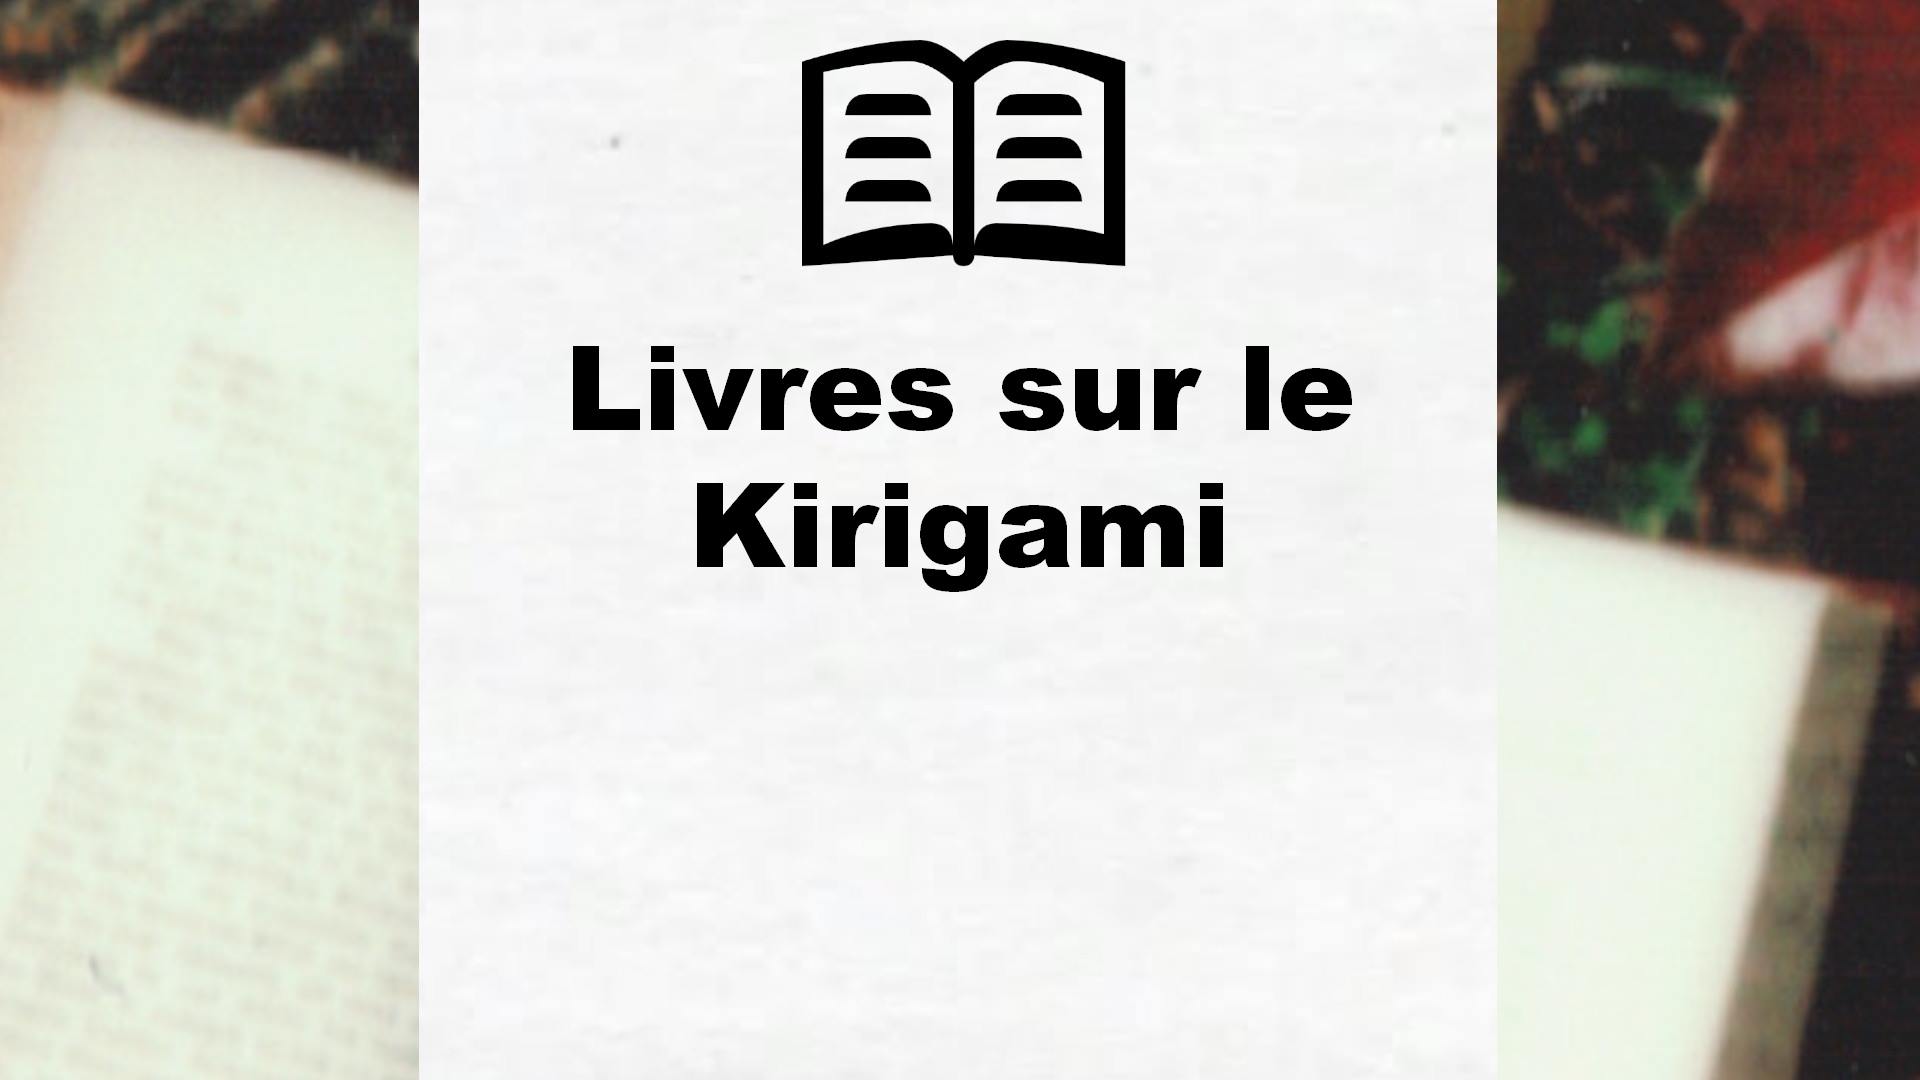 Livres sur le Kirigami